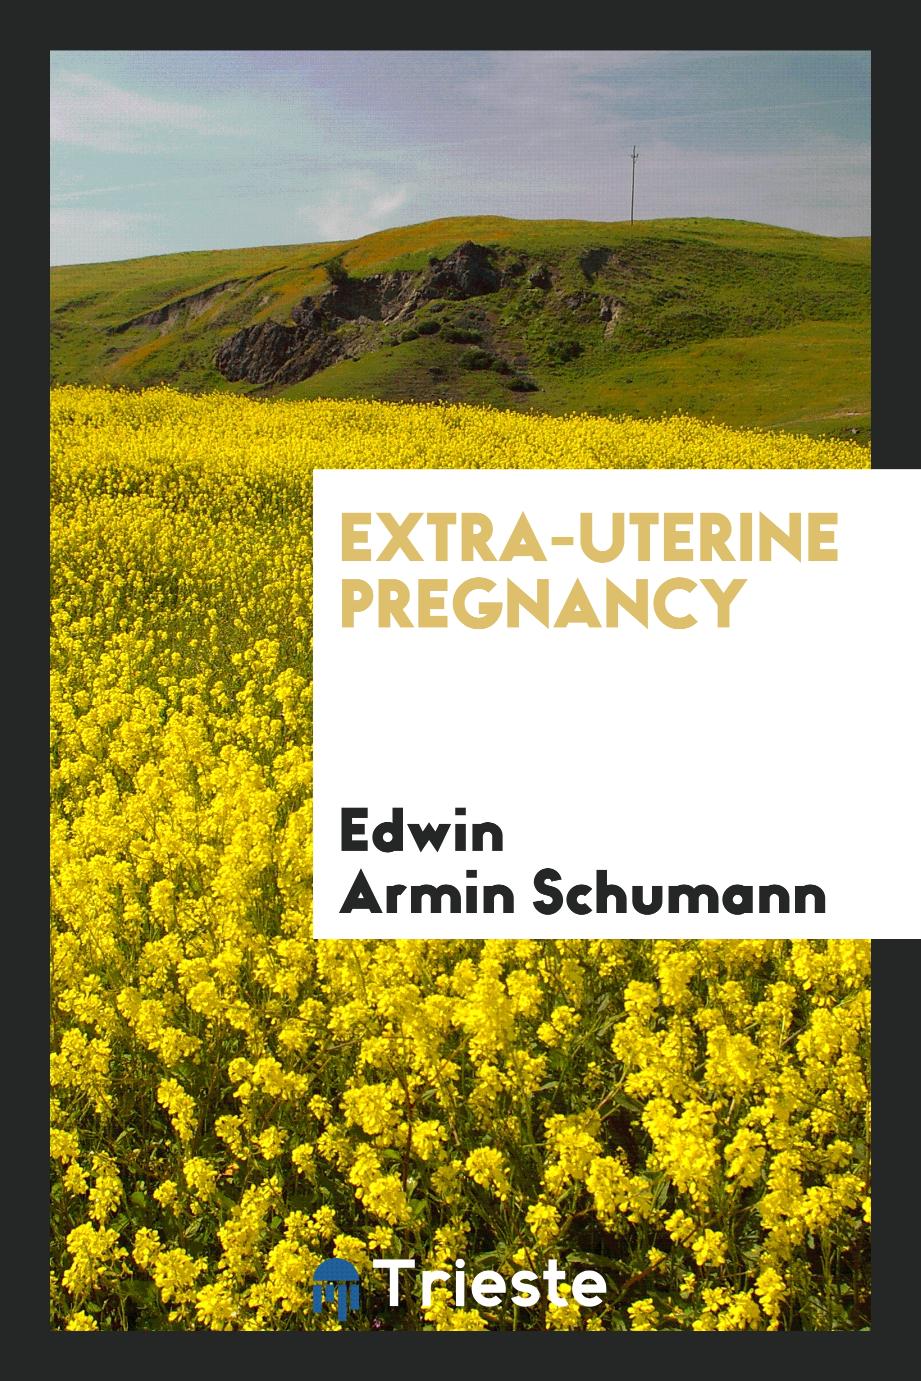 Extra-uterine pregnancy